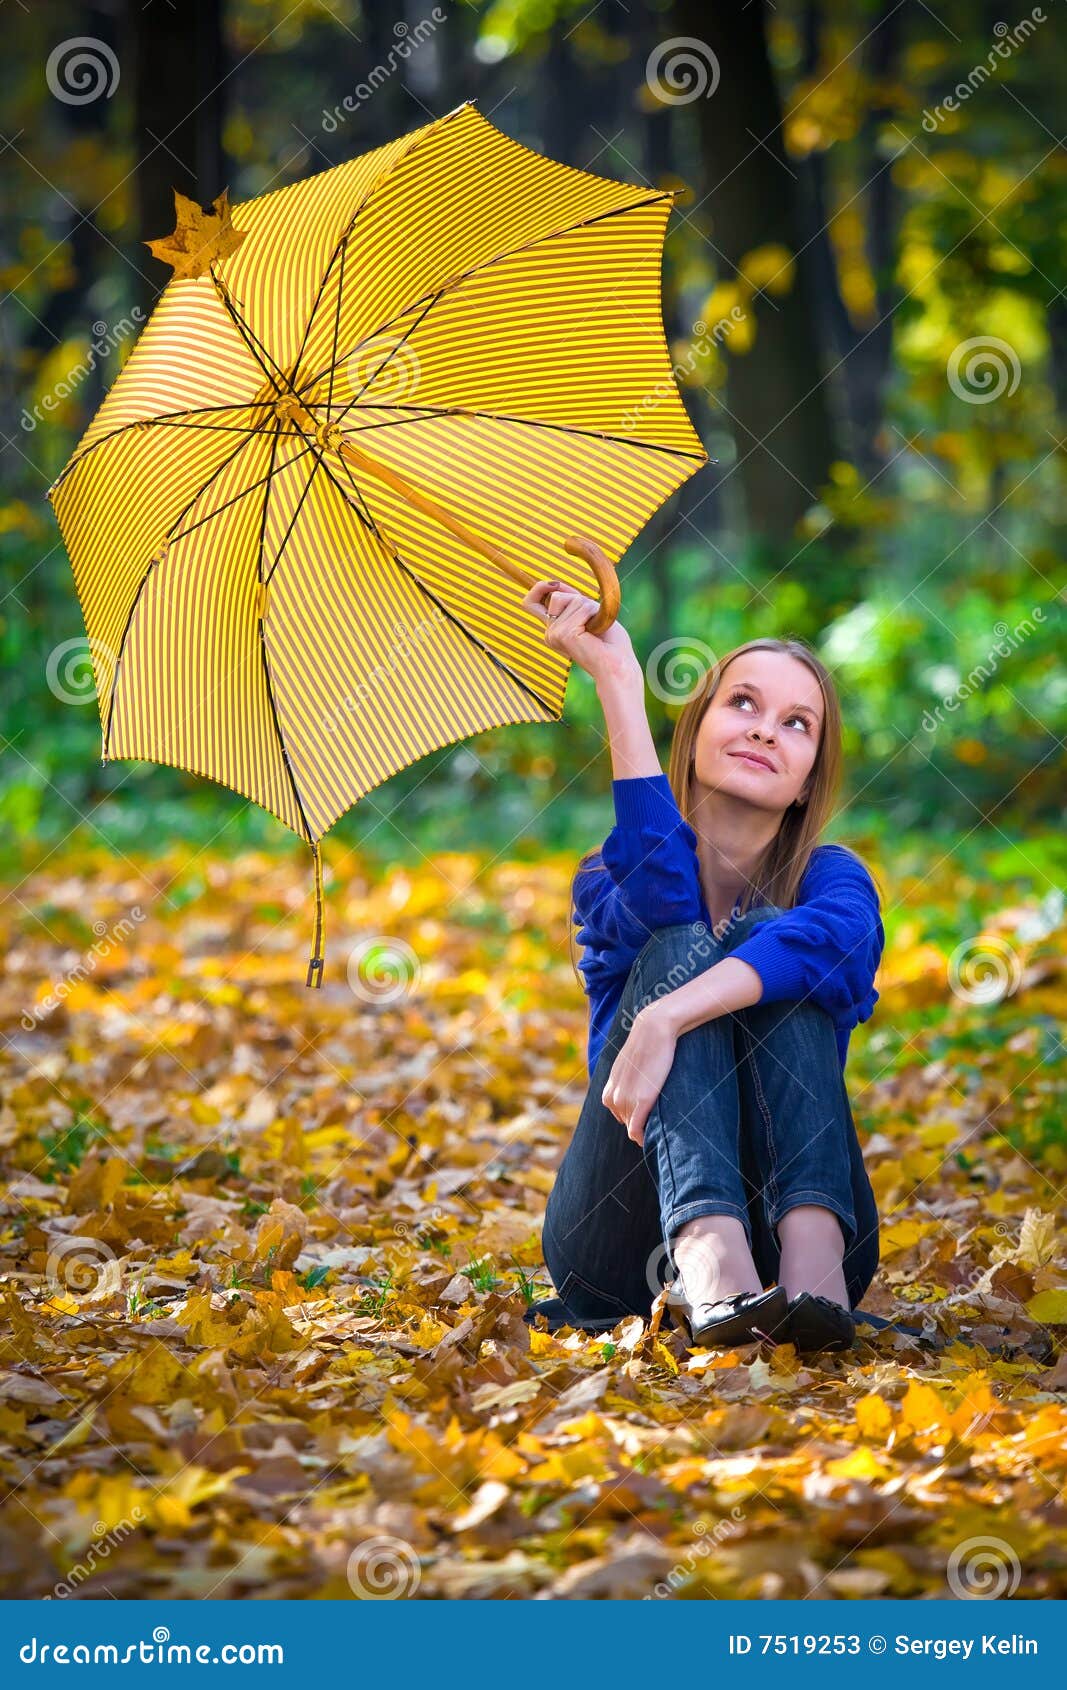 Cute Girl With Umbrella Stock Photos - Image: 7519253